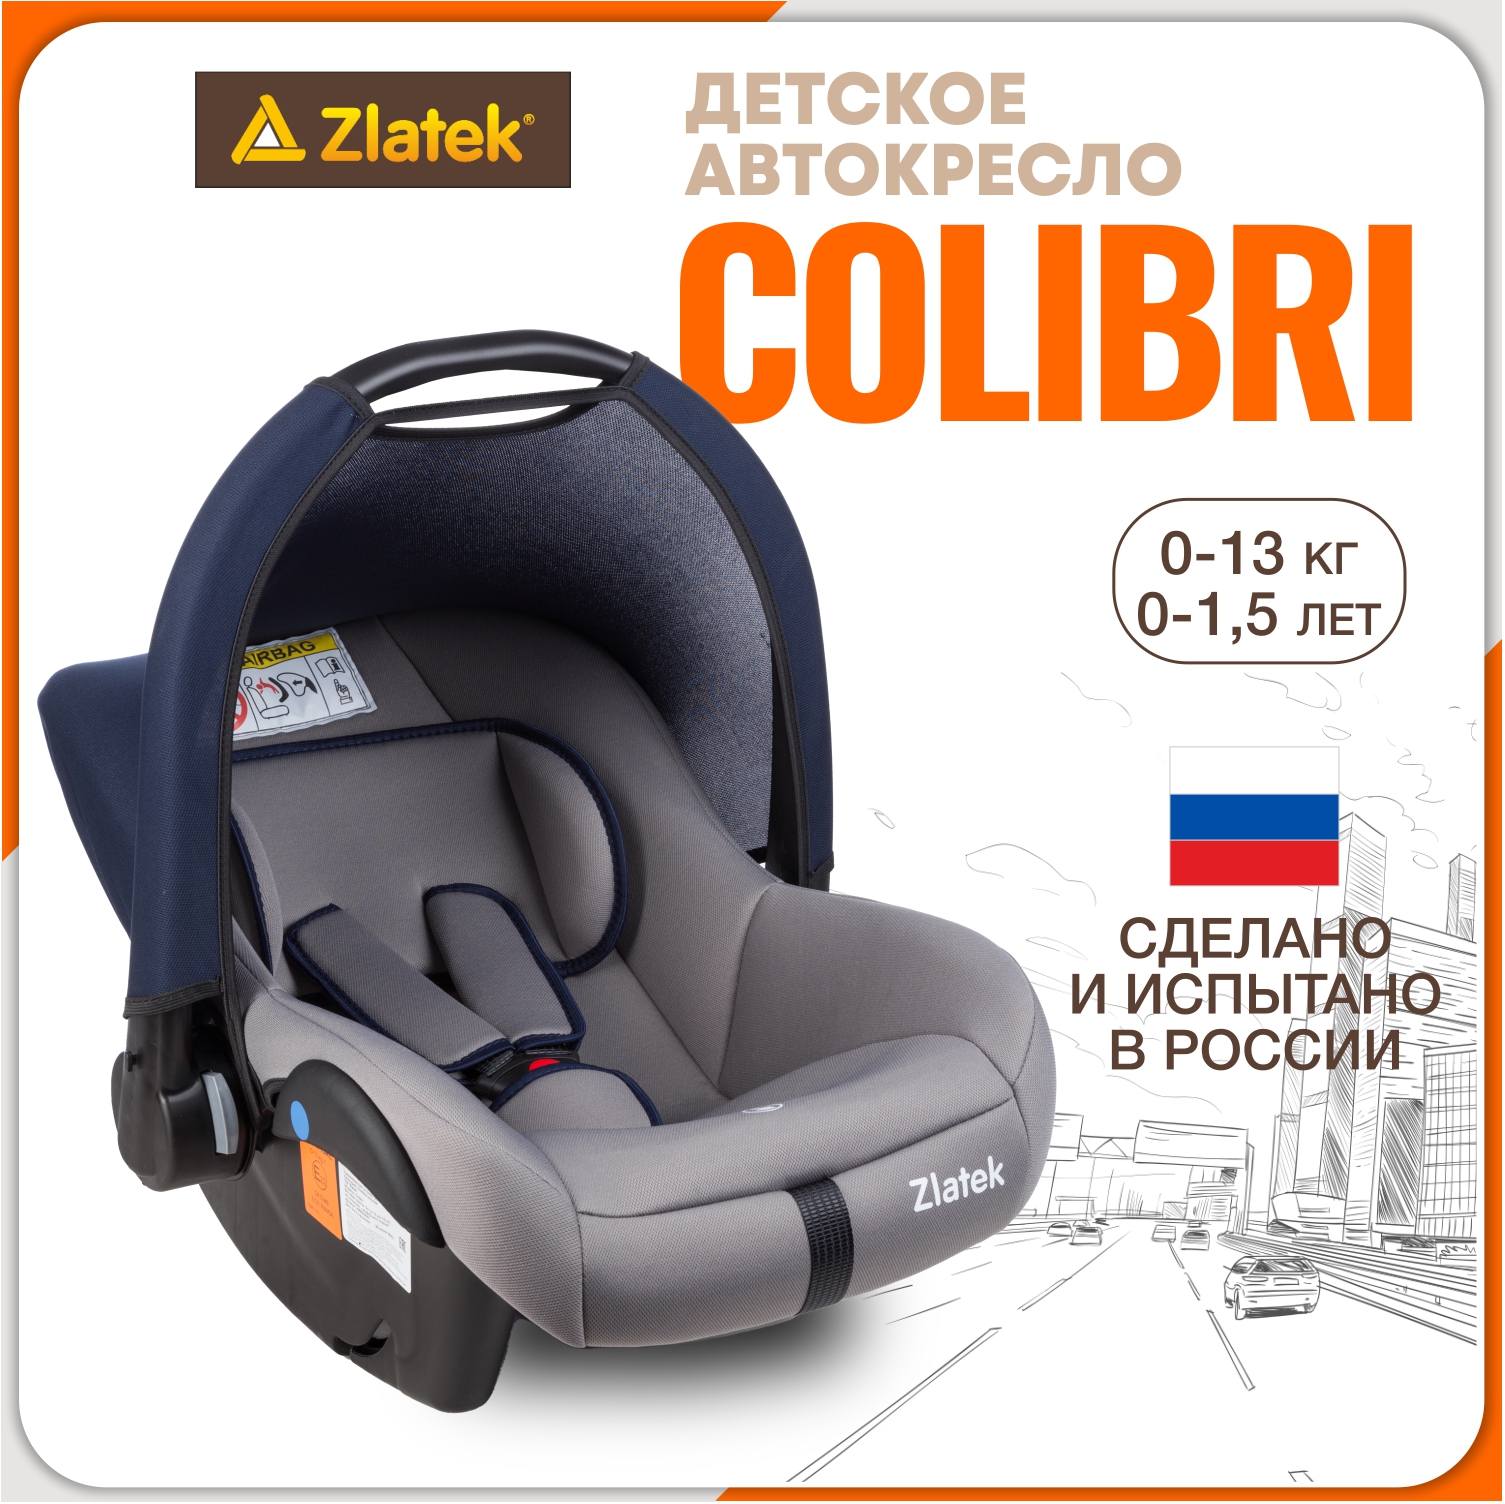 Автолюлька для новорожденных Zlatek Colibri от 0 до 13 кг, цвет сапфирово-серый комплект в кроватку colibri